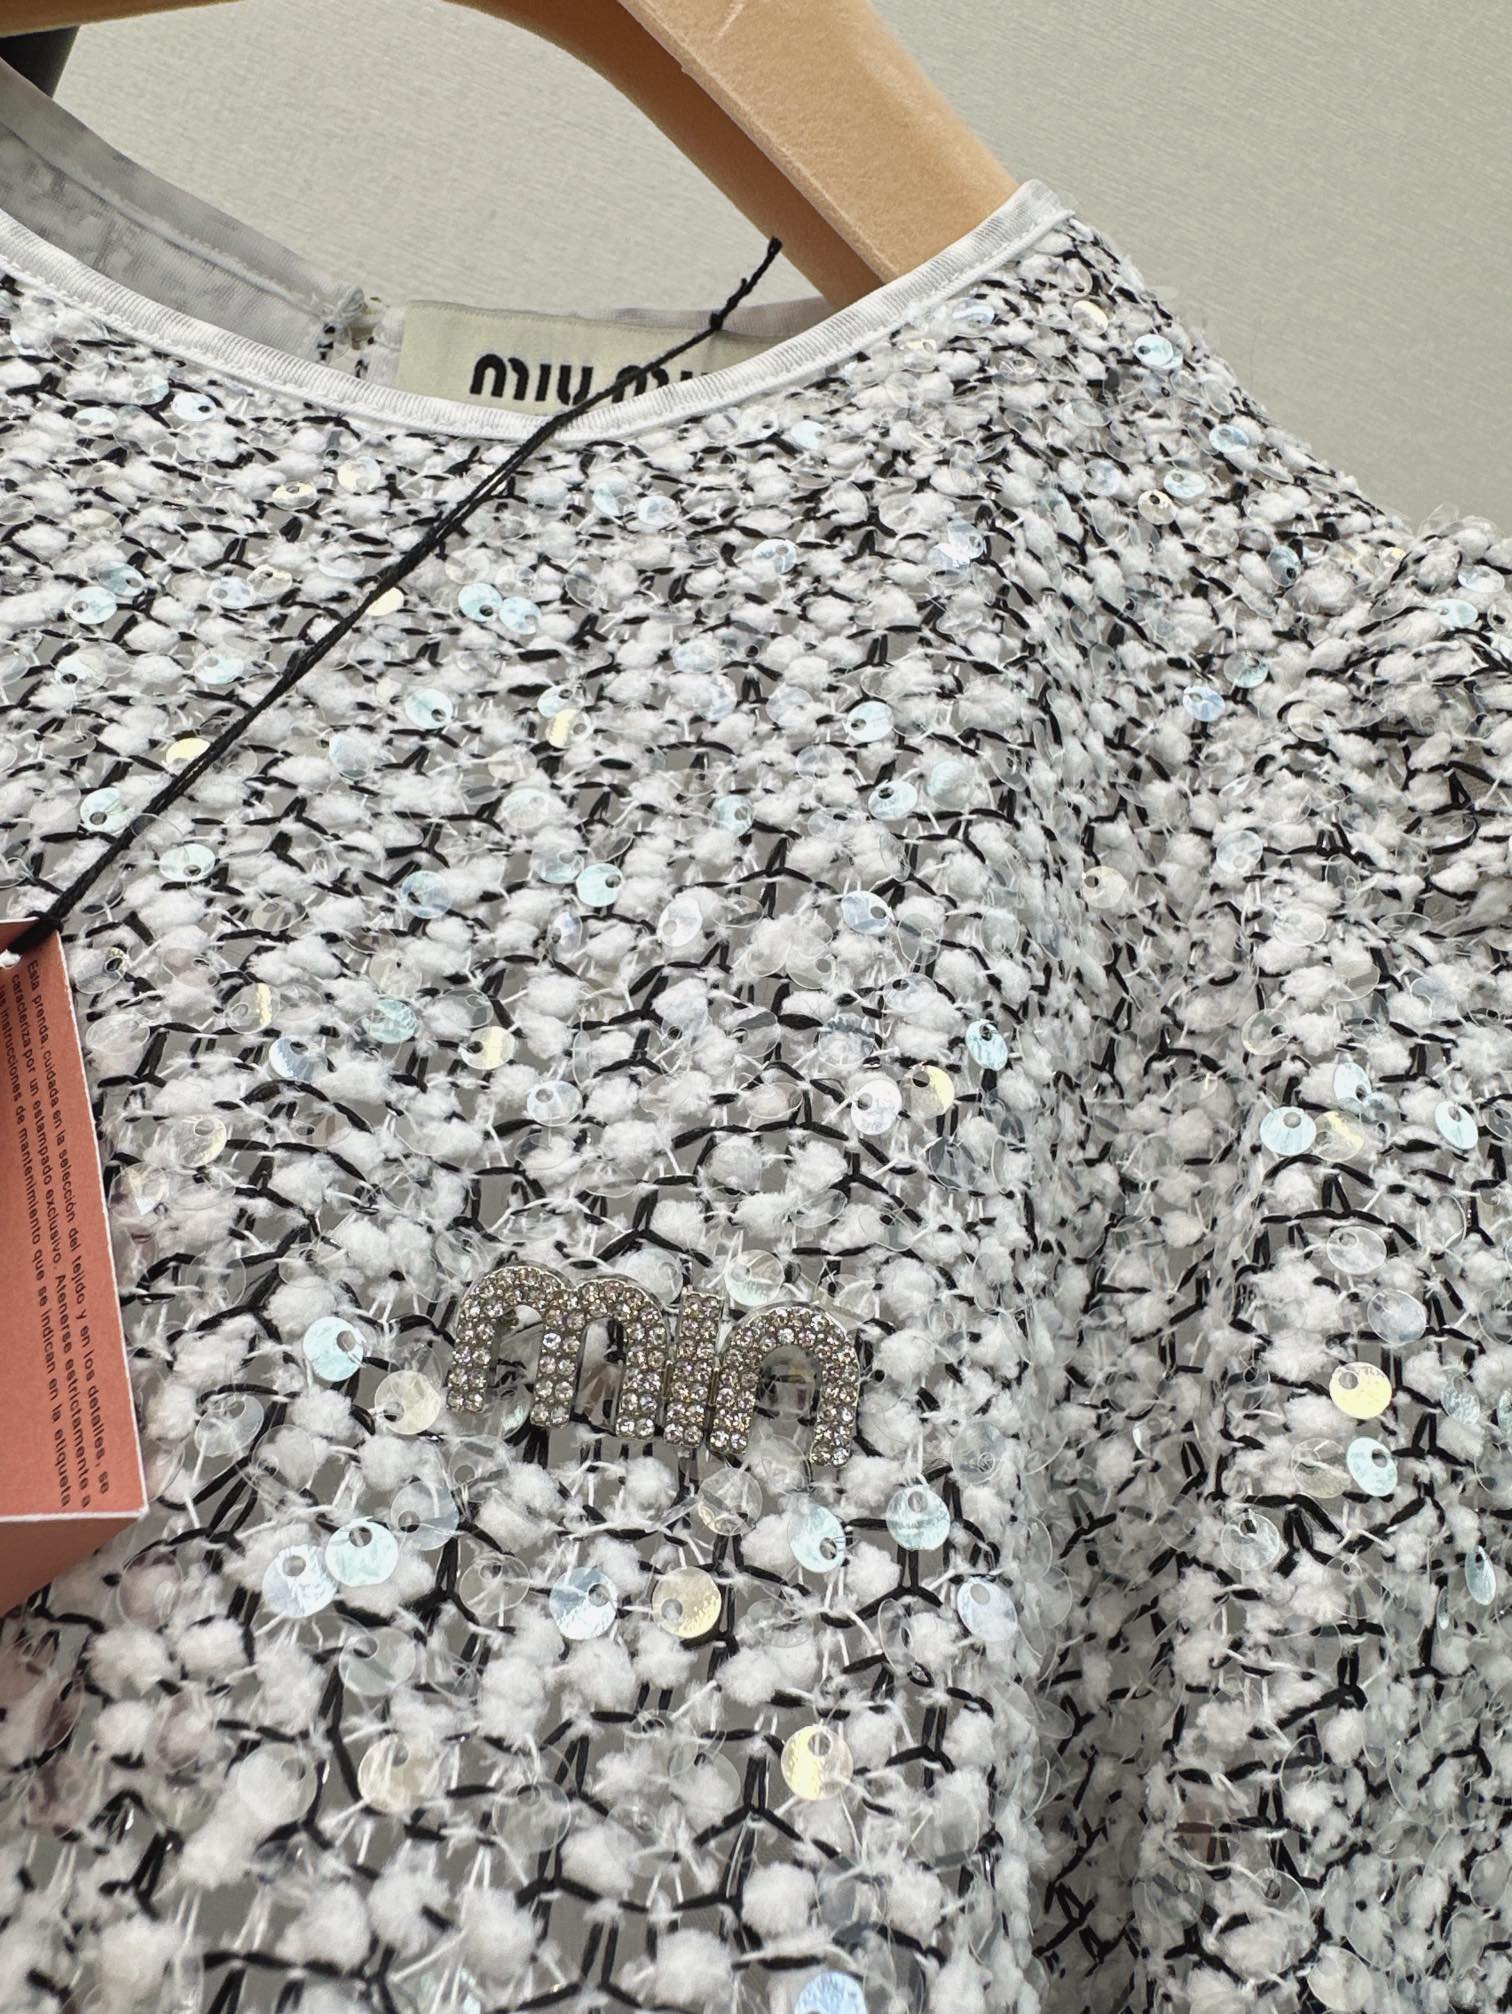 独家首发贵气优雅Miu24Ss春夏最新款重磅刺绣亮片设计上衣极简的时髦感简洁大气的版型设计拼接立体泡泡袖